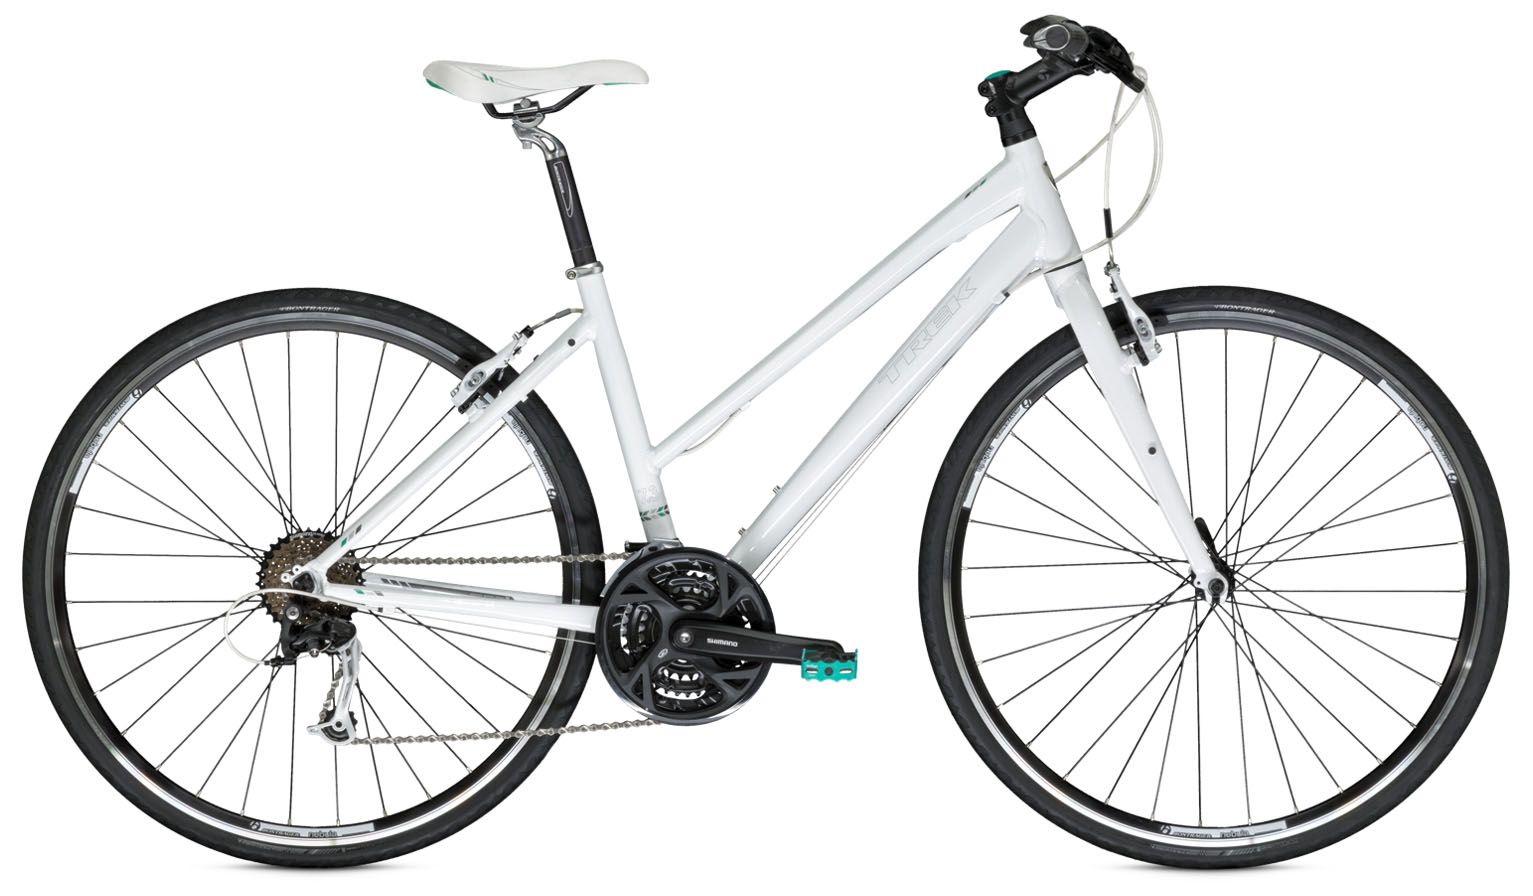  Велосипед Trek 7.3 FX WSD 2014